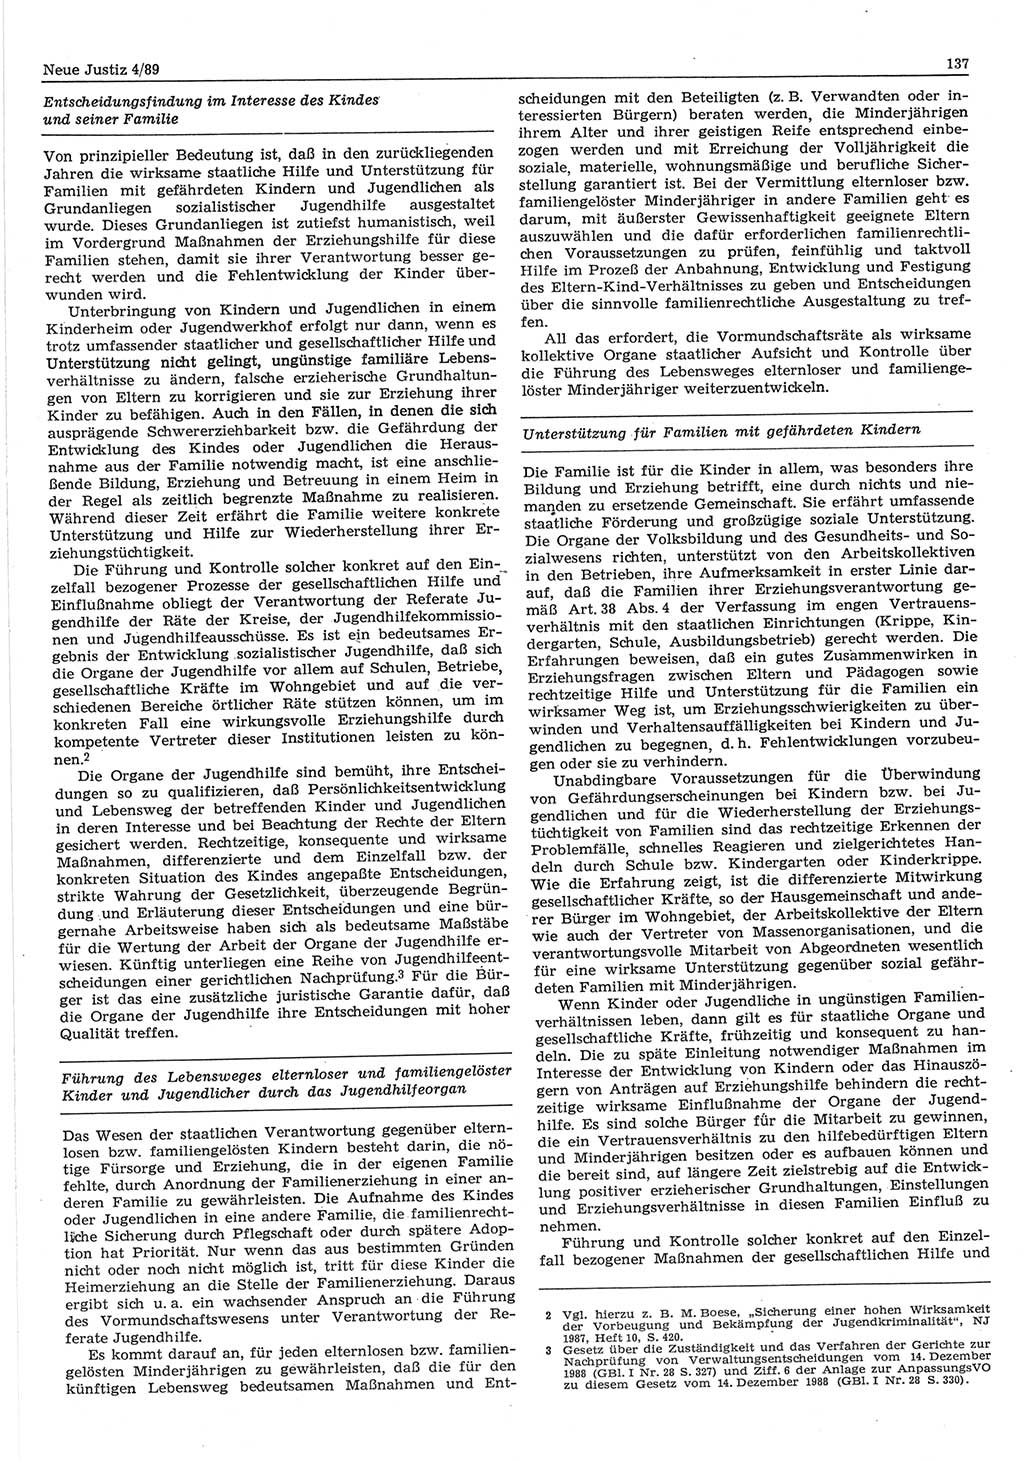 Neue Justiz (NJ), Zeitschrift für sozialistisches Recht und Gesetzlichkeit [Deutsche Demokratische Republik (DDR)], 43. Jahrgang 1989, Seite 137 (NJ DDR 1989, S. 137)